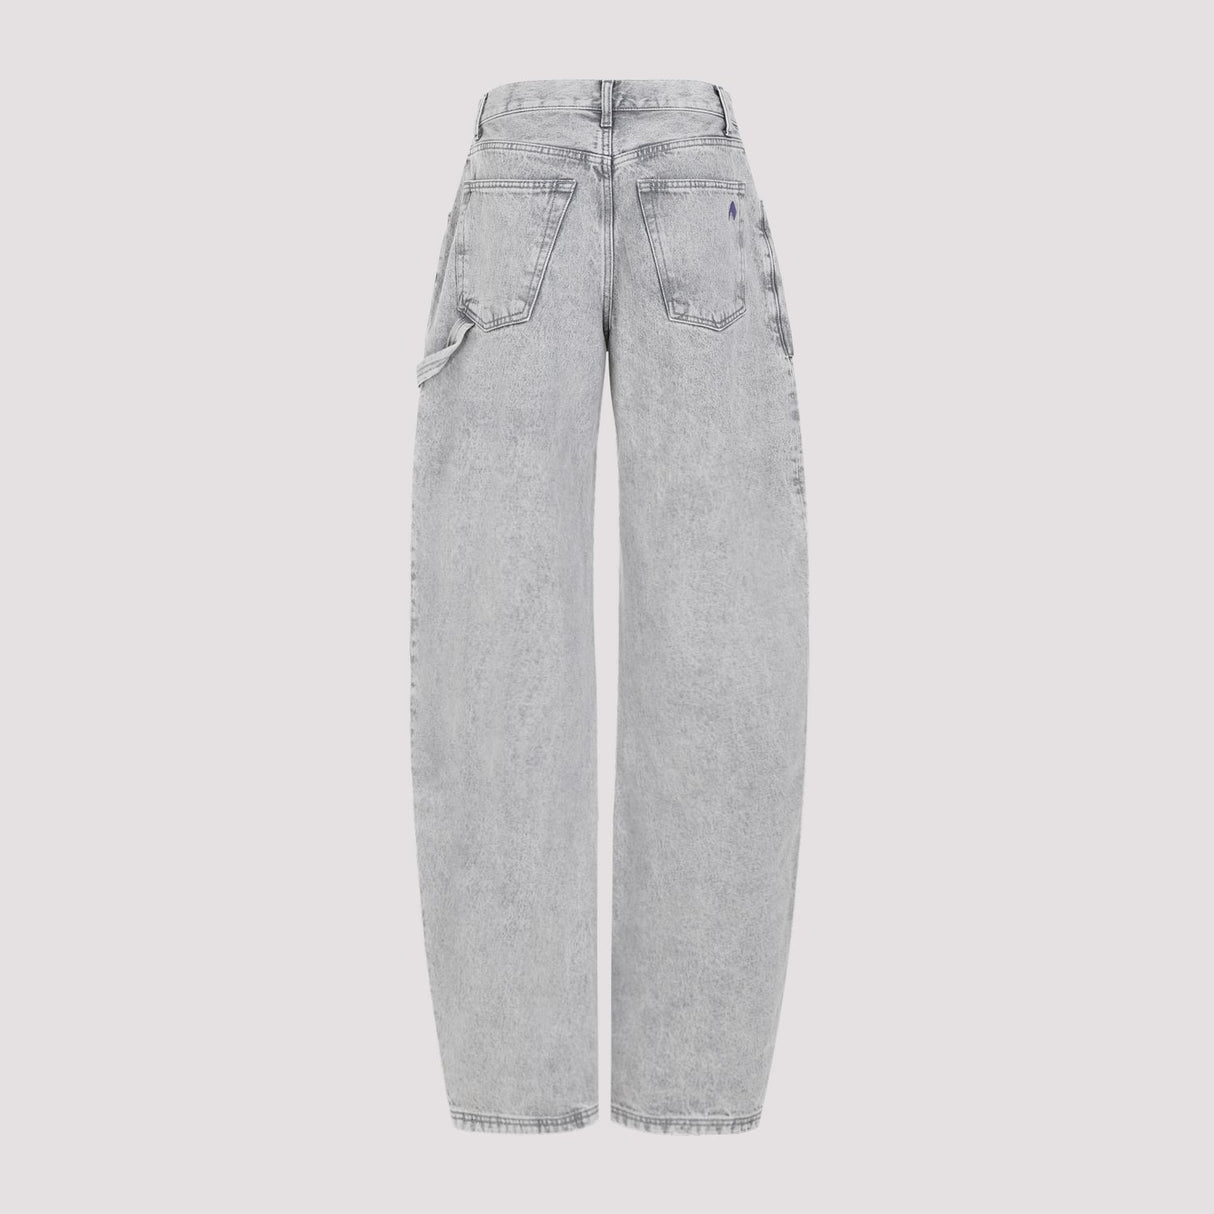 THE ATTICO Effie Long Cotton Pants - Grey